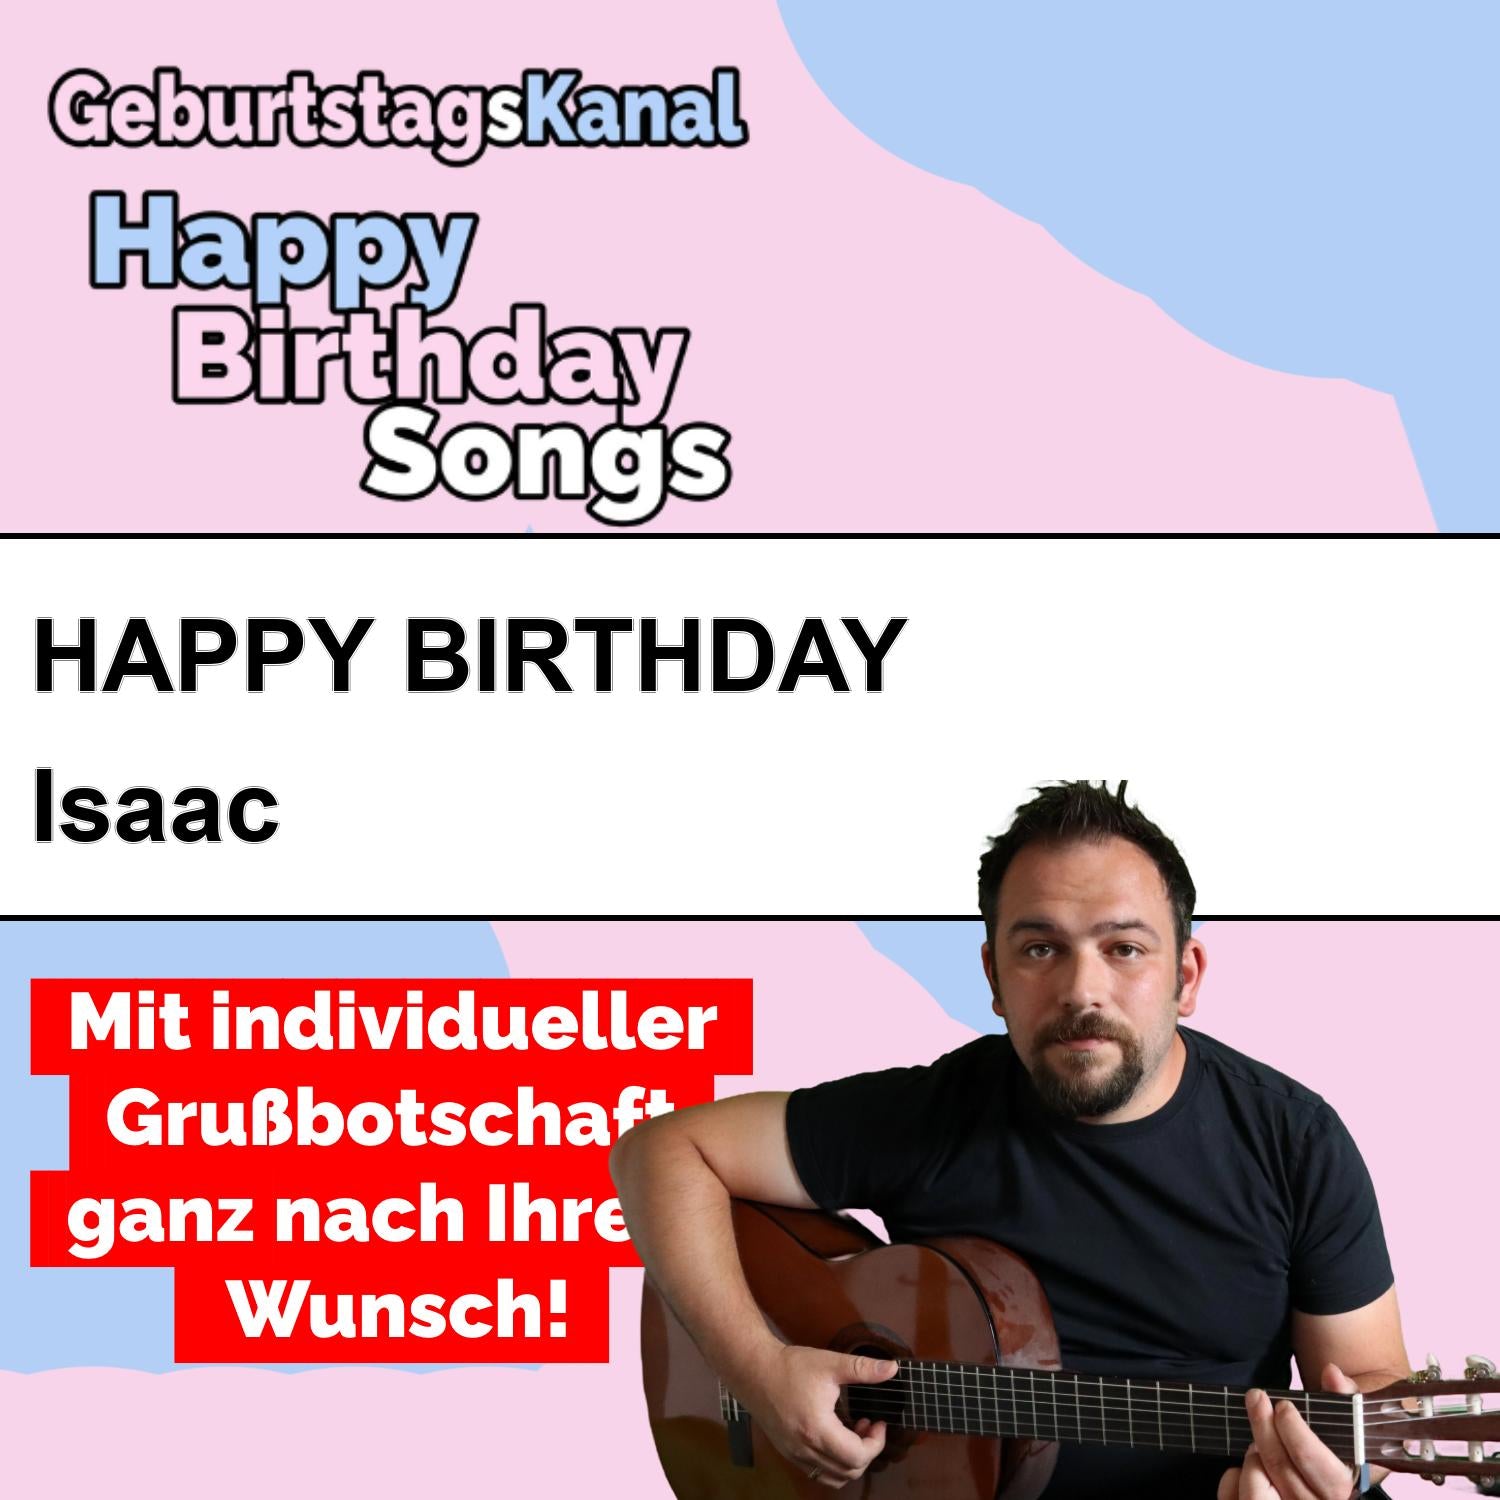 Produktbild Happy Birthday to you Isaac mit Wunschgrußbotschaft